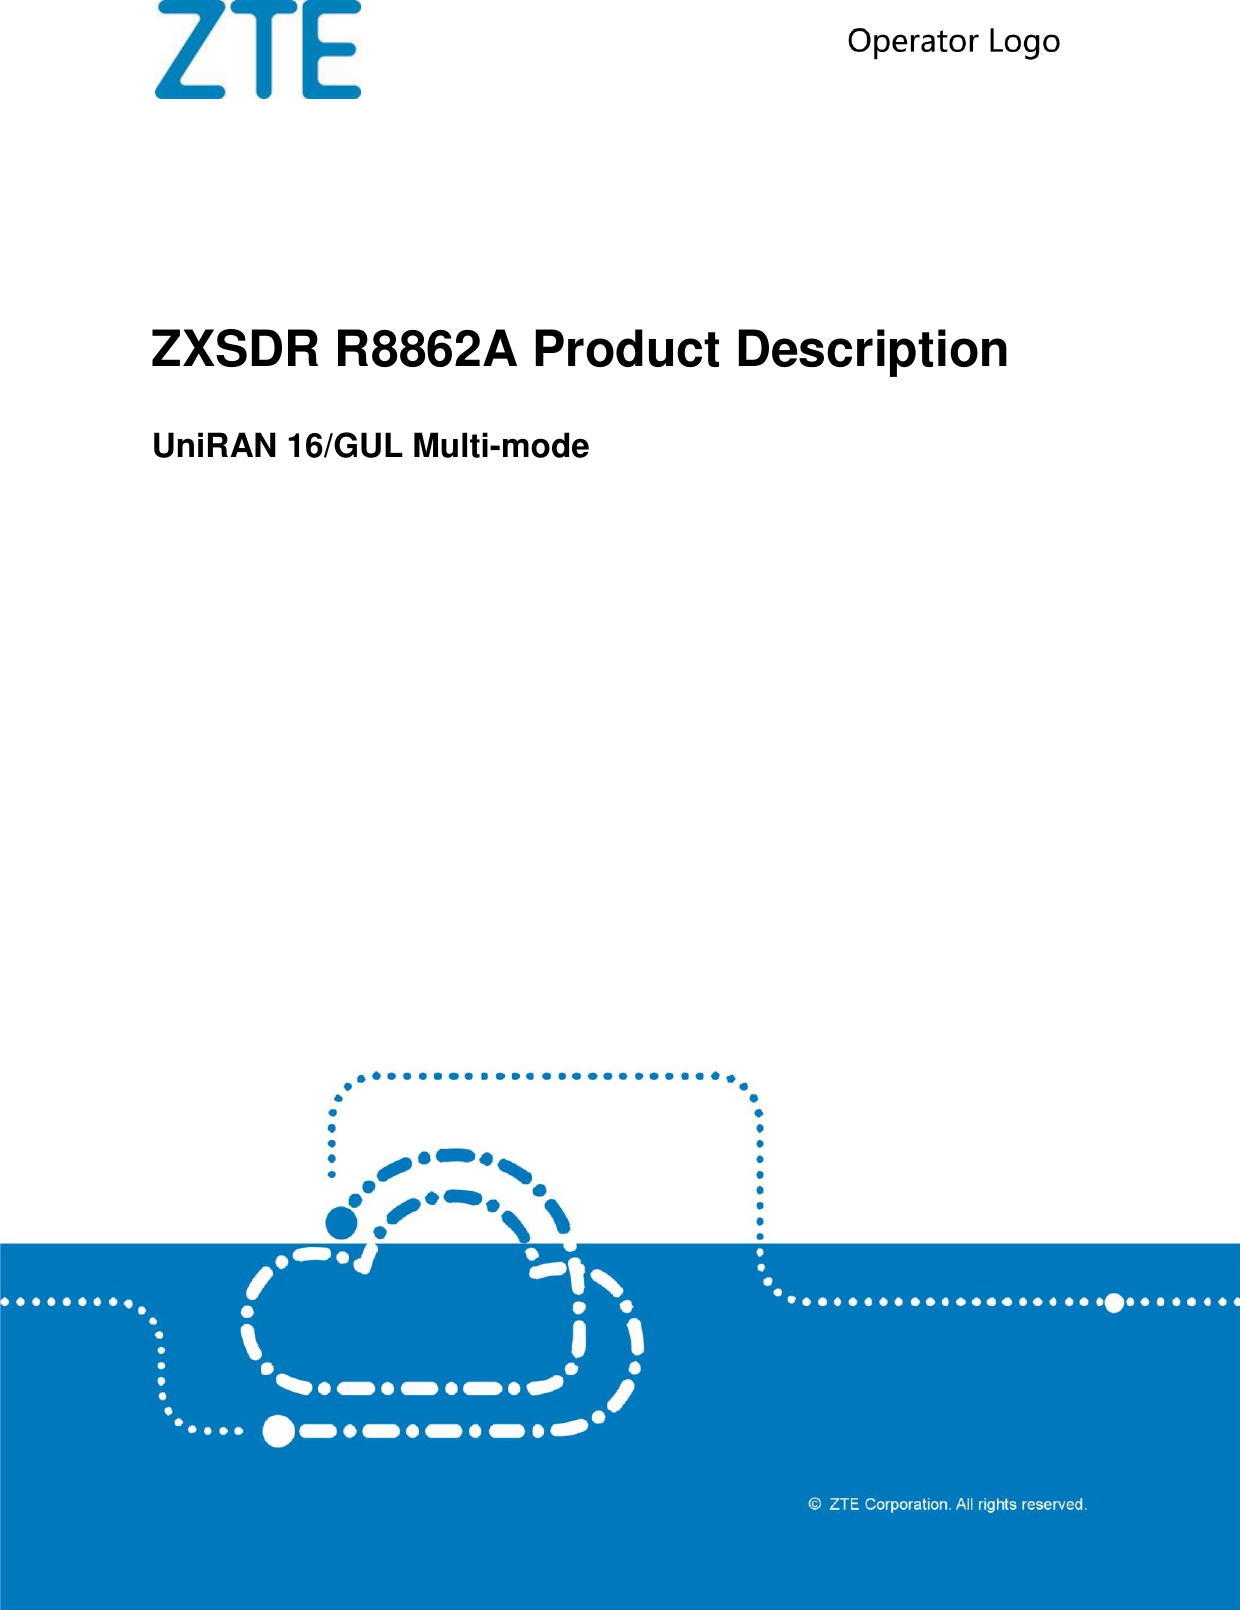    ZXSDR R8862A Product Description UniRAN 16/GUL Multi-mode  